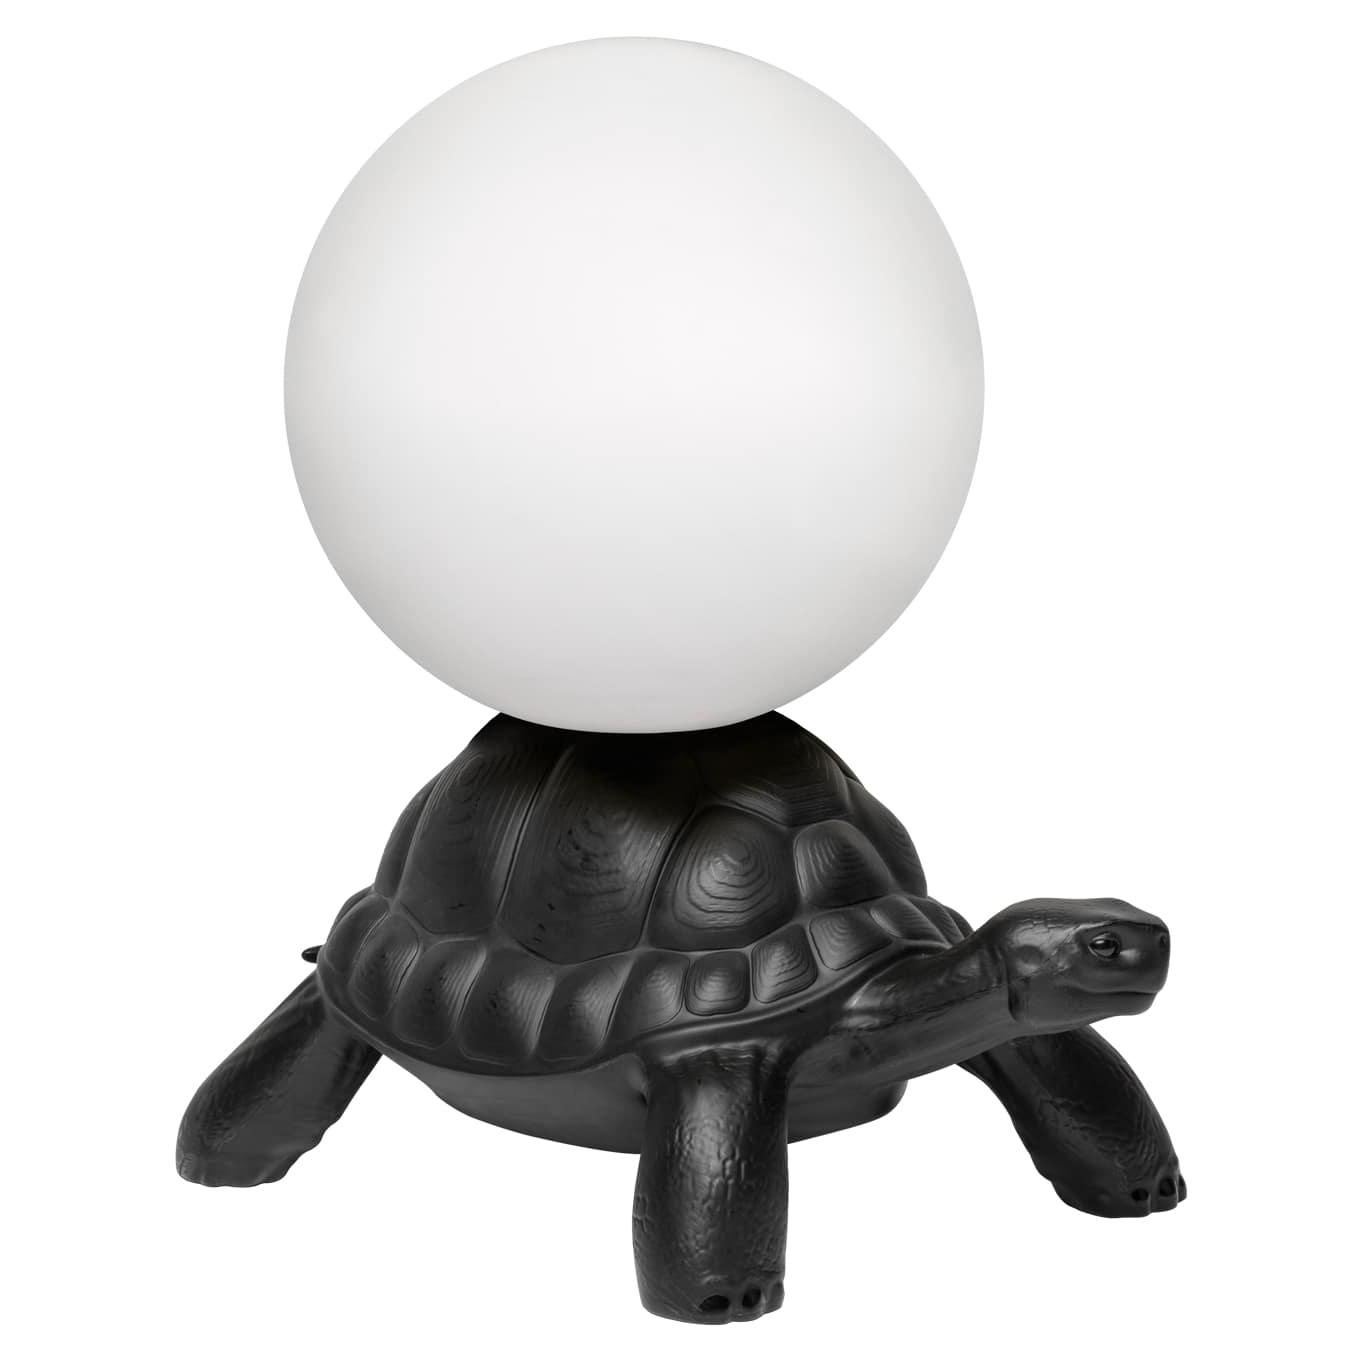 Carrylampe mit schwarzer Schildkröte, entworfen von Marcantonio